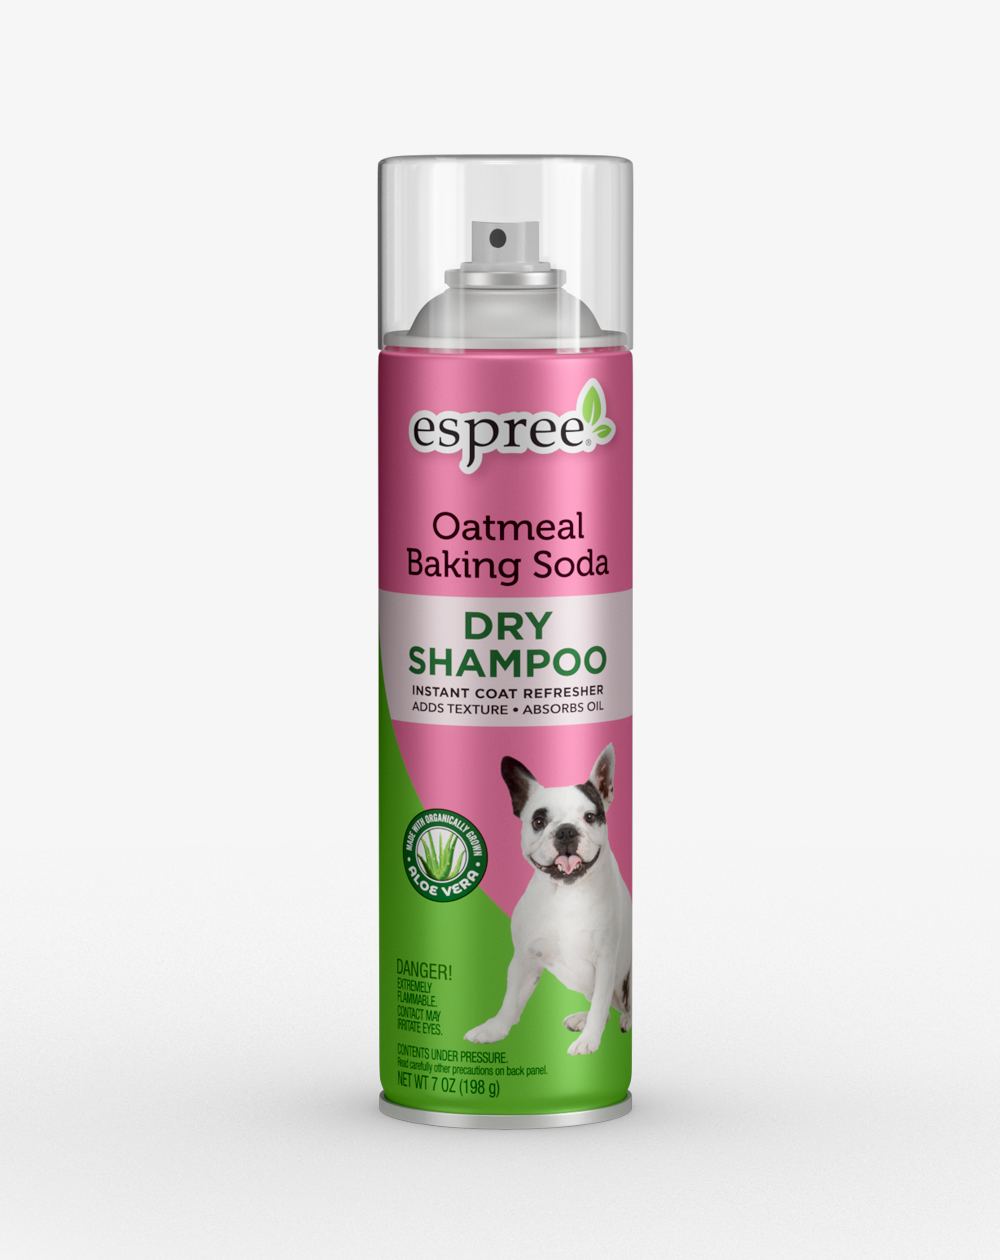 Espree Oatmeal Baking Soda Dry Shampoo for Dogs